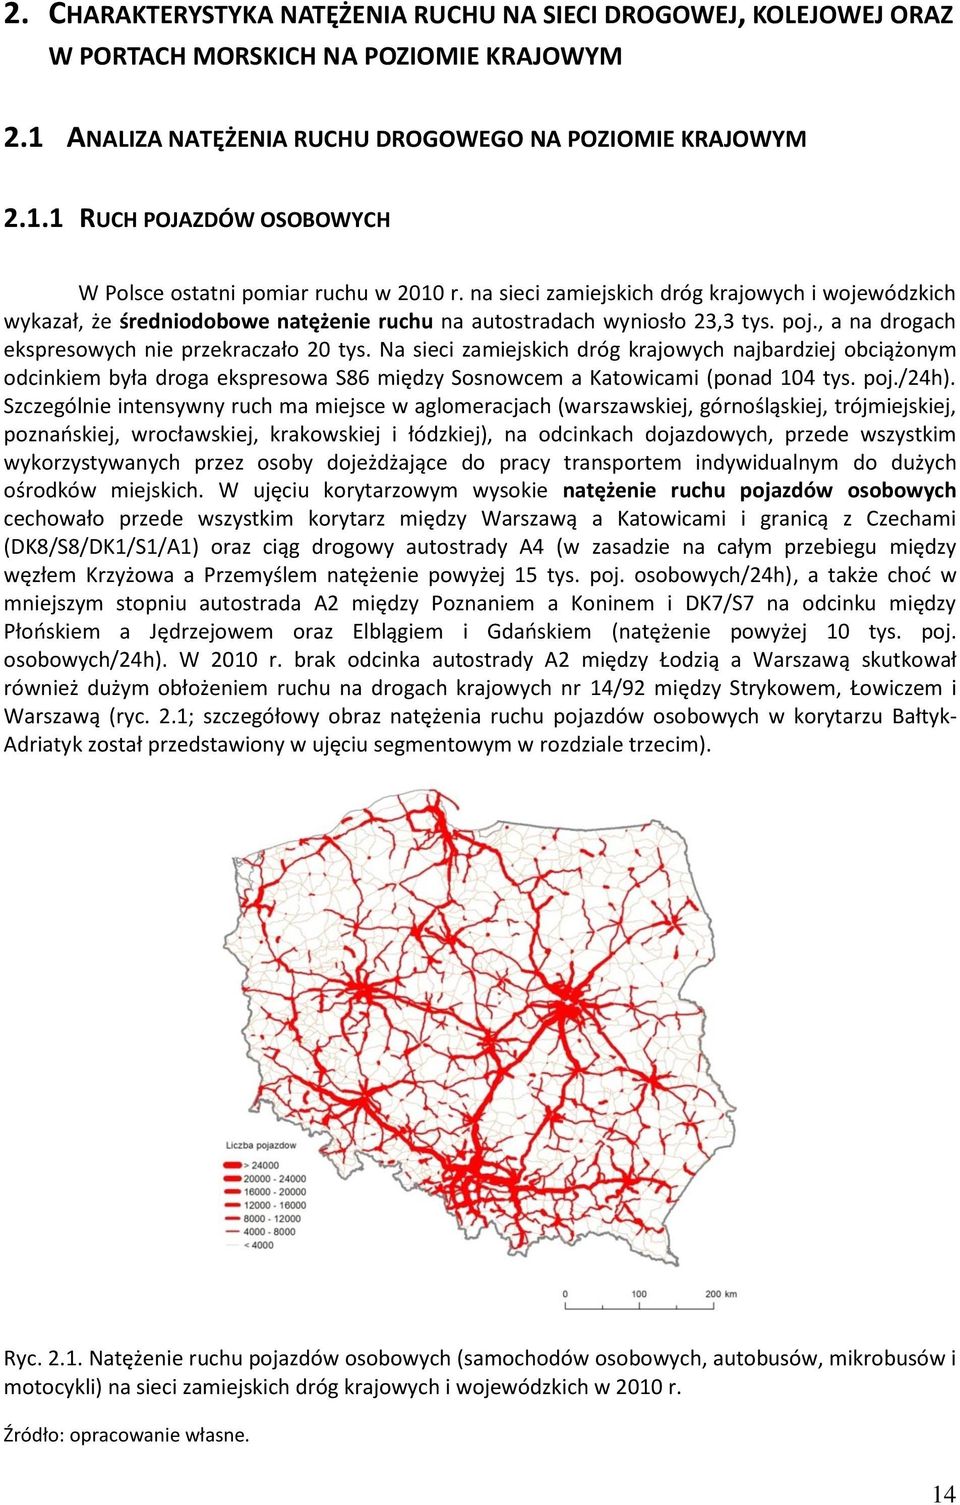 Na sieci zamiejskich dróg krajowych najbardziej obciążonym odcinkiem była droga ekspresowa S86 między Sosnowcem a Katowicami (ponad 104 tys. poj./24h).